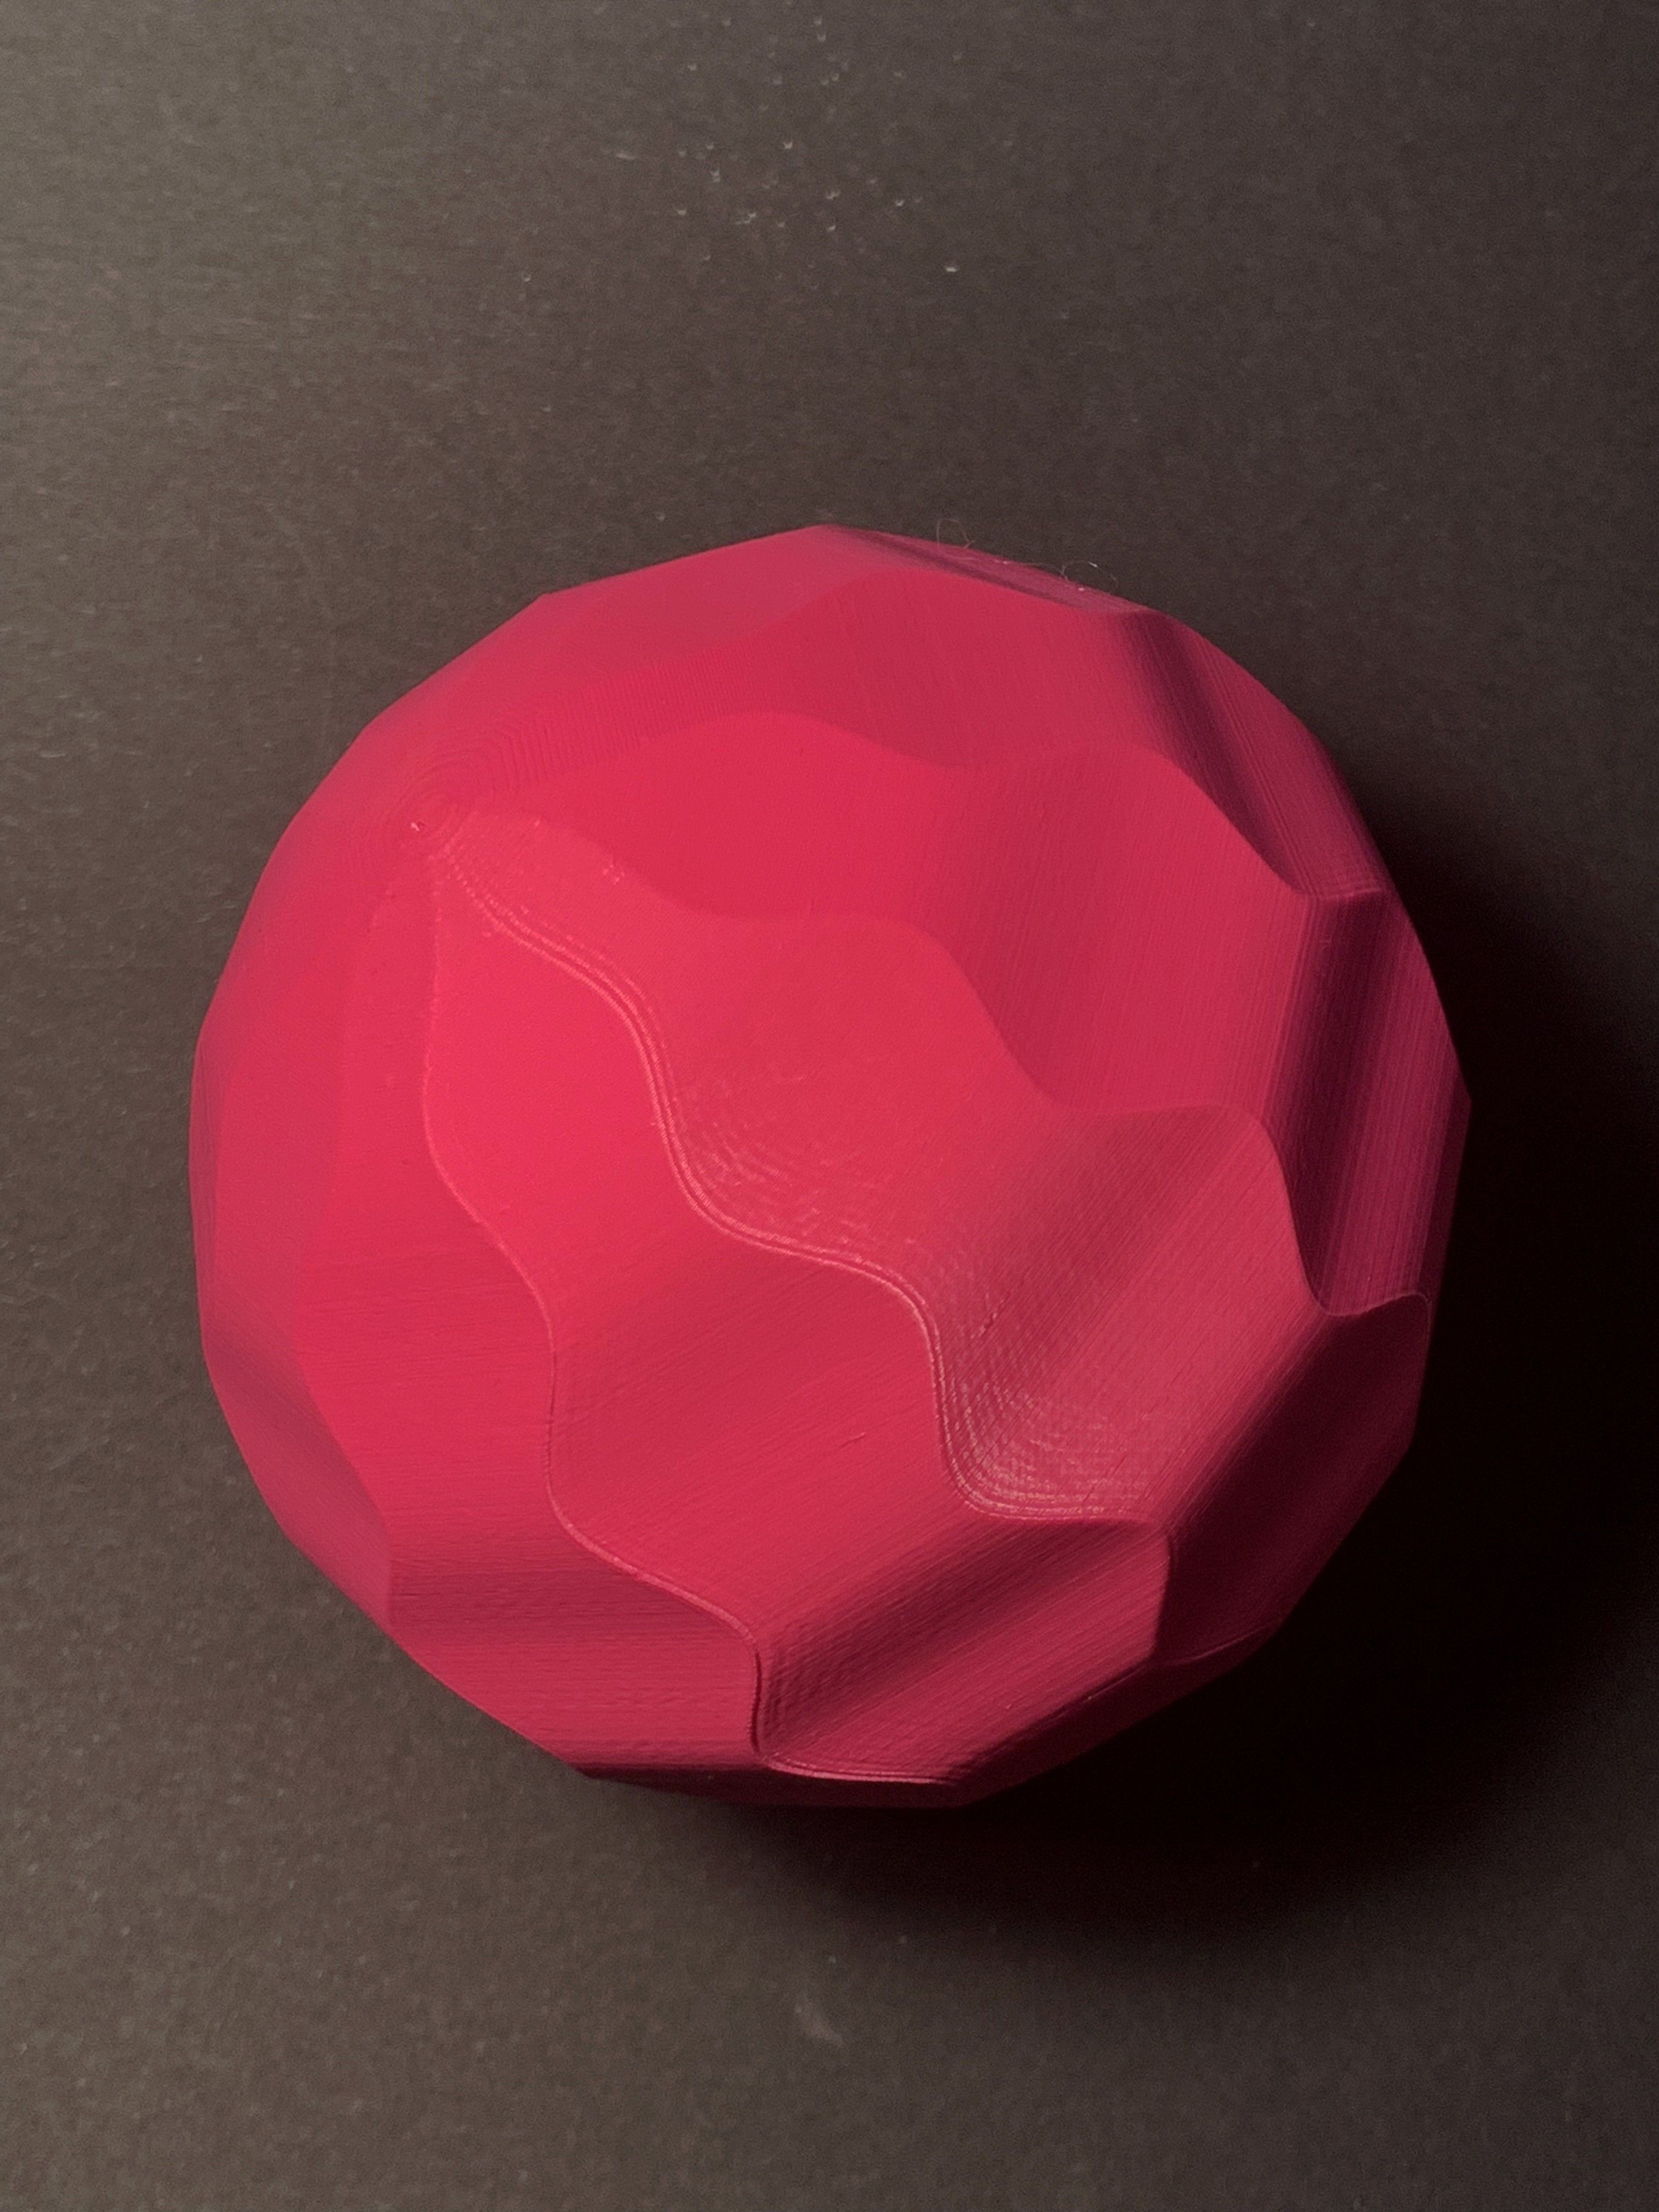 IMG_4393.jpg Download STL file wave sphere • 3D printable model, Ciokobango